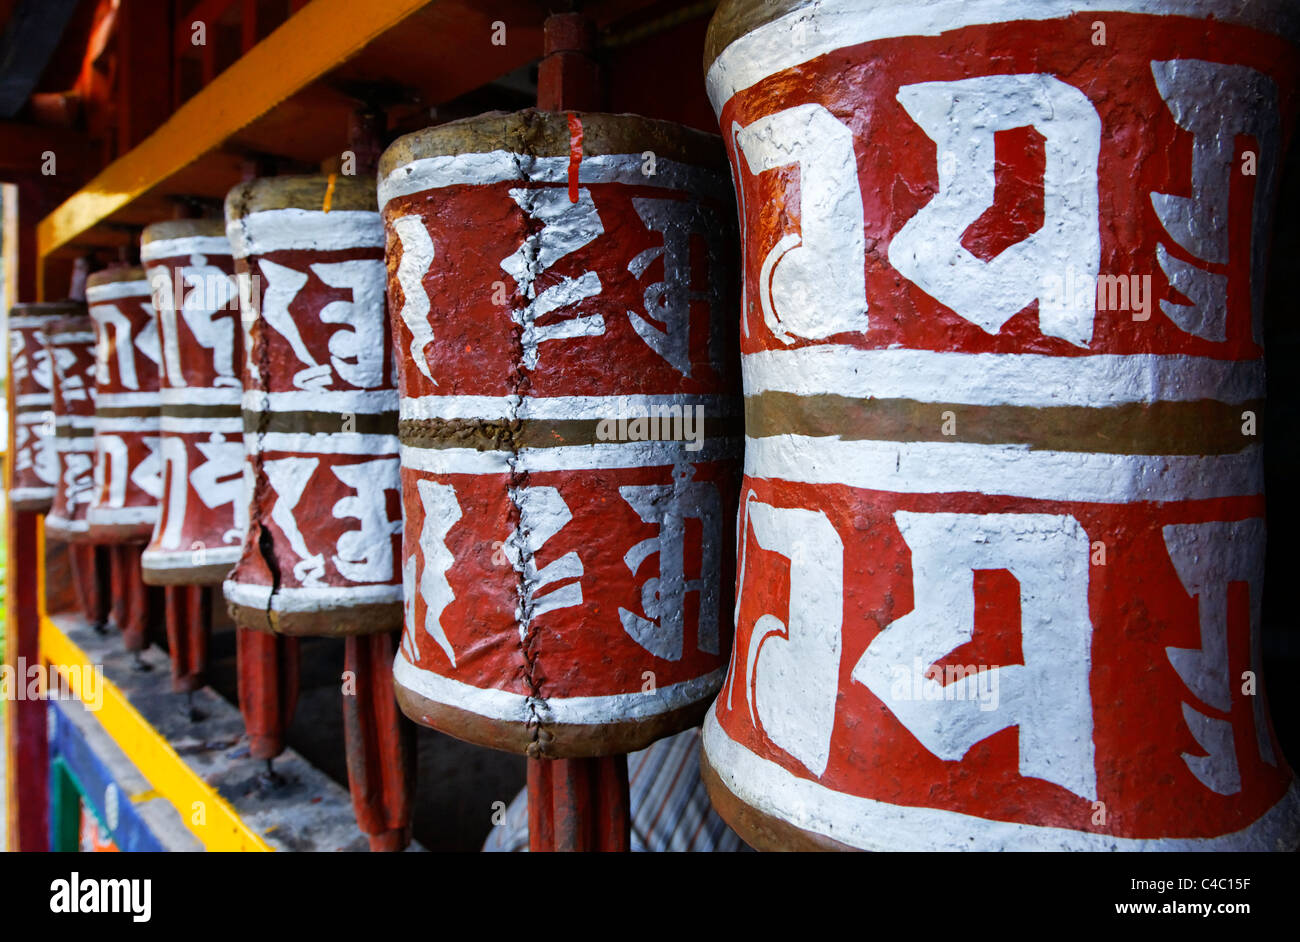 India - Sikkim - the Buddhist Labrang Monastery - prayer wheels Stock Photo